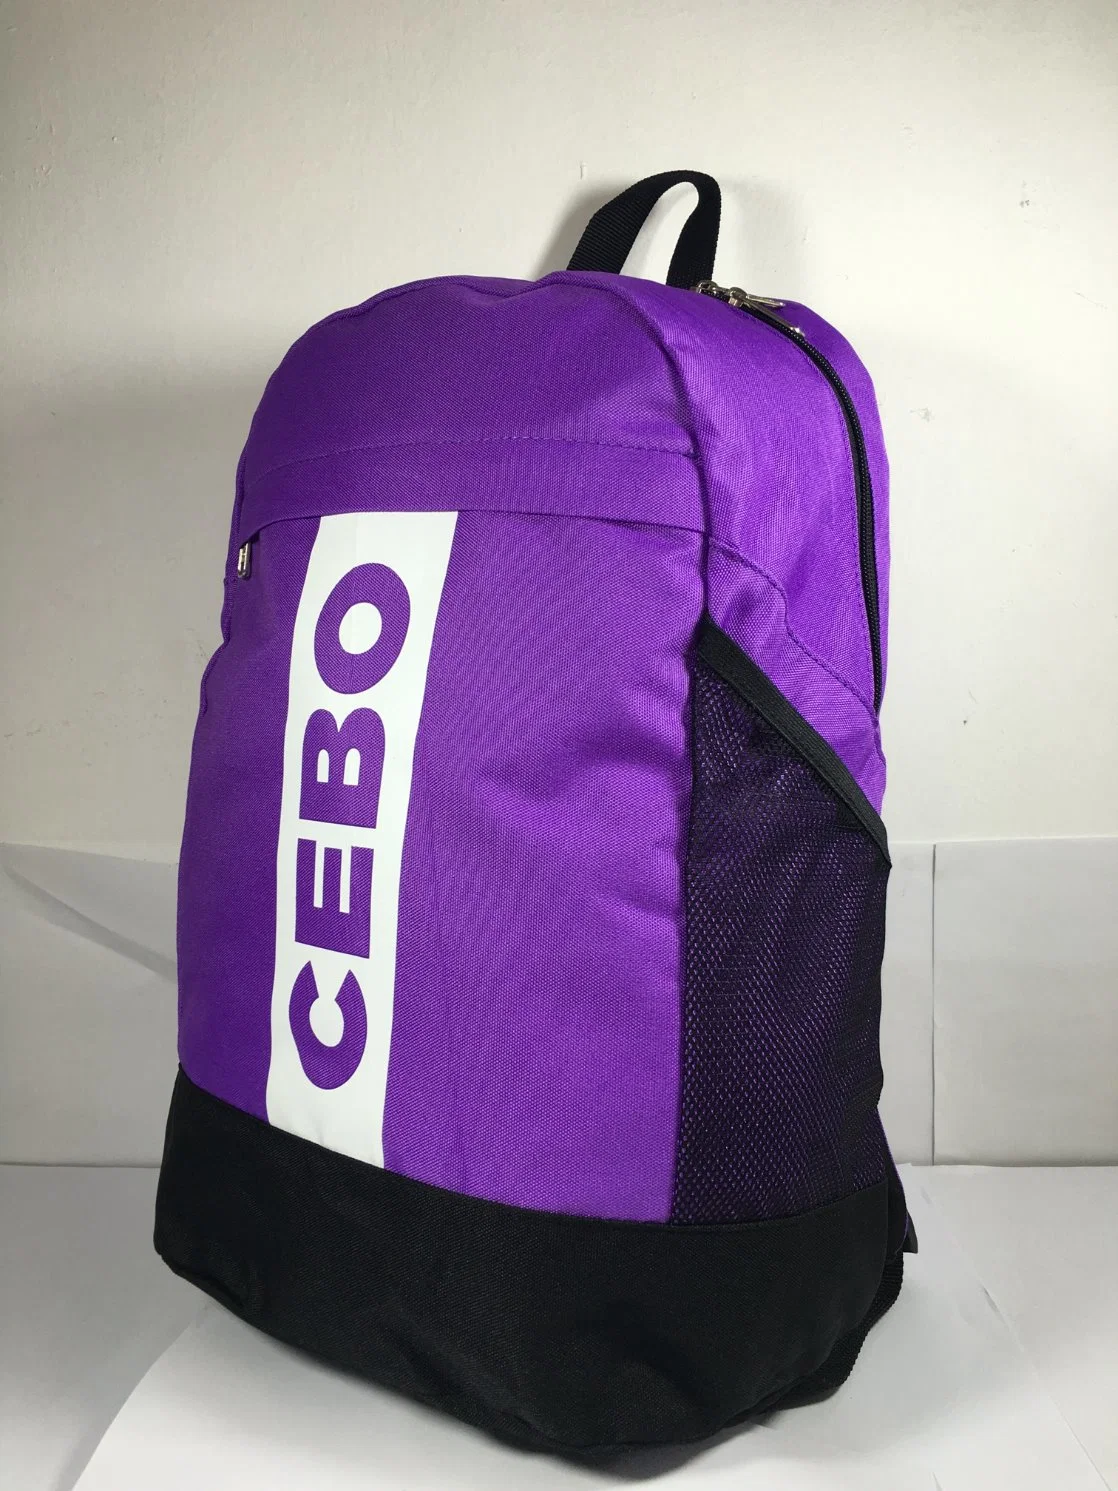 Promoção quente School Bag Fabricantes Kids Back Pack Saco Escolar